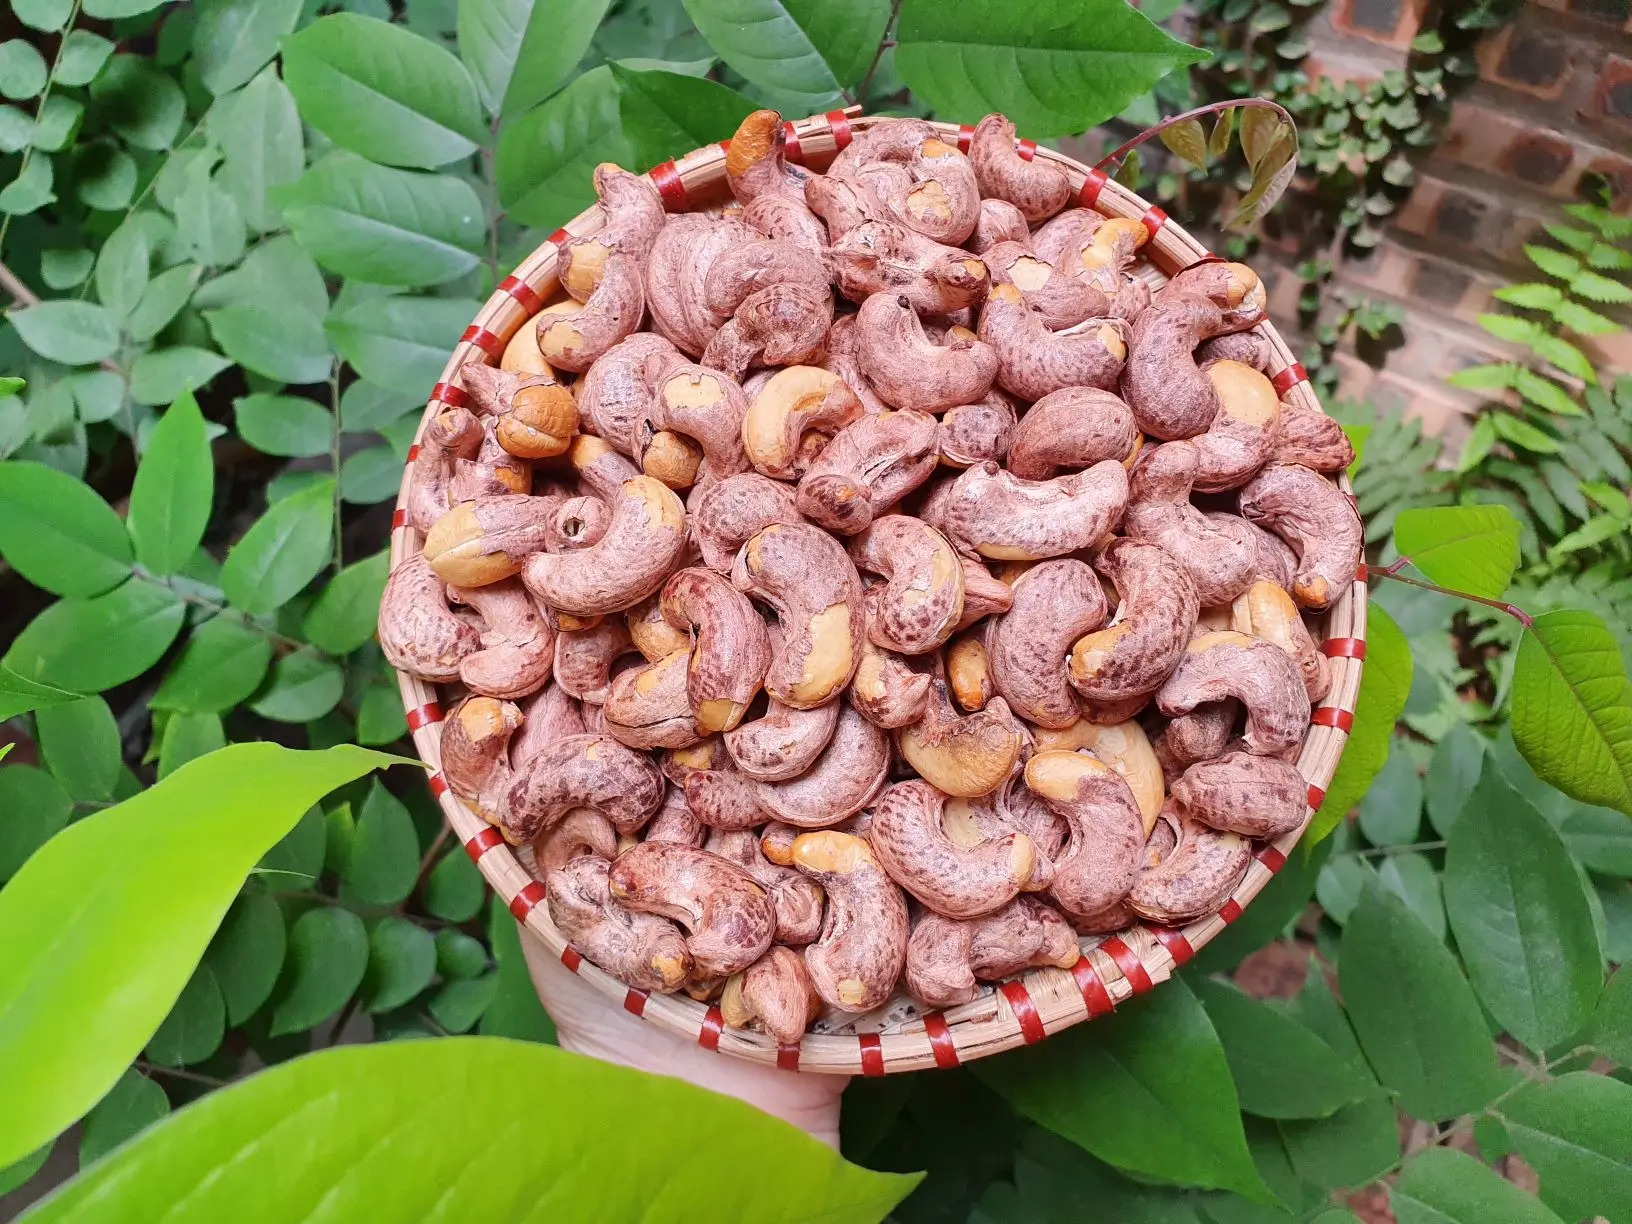 Raw / Salted Roasted Cashew Nuts W180, W210, W240, W320, W450 - Cashew Nuts